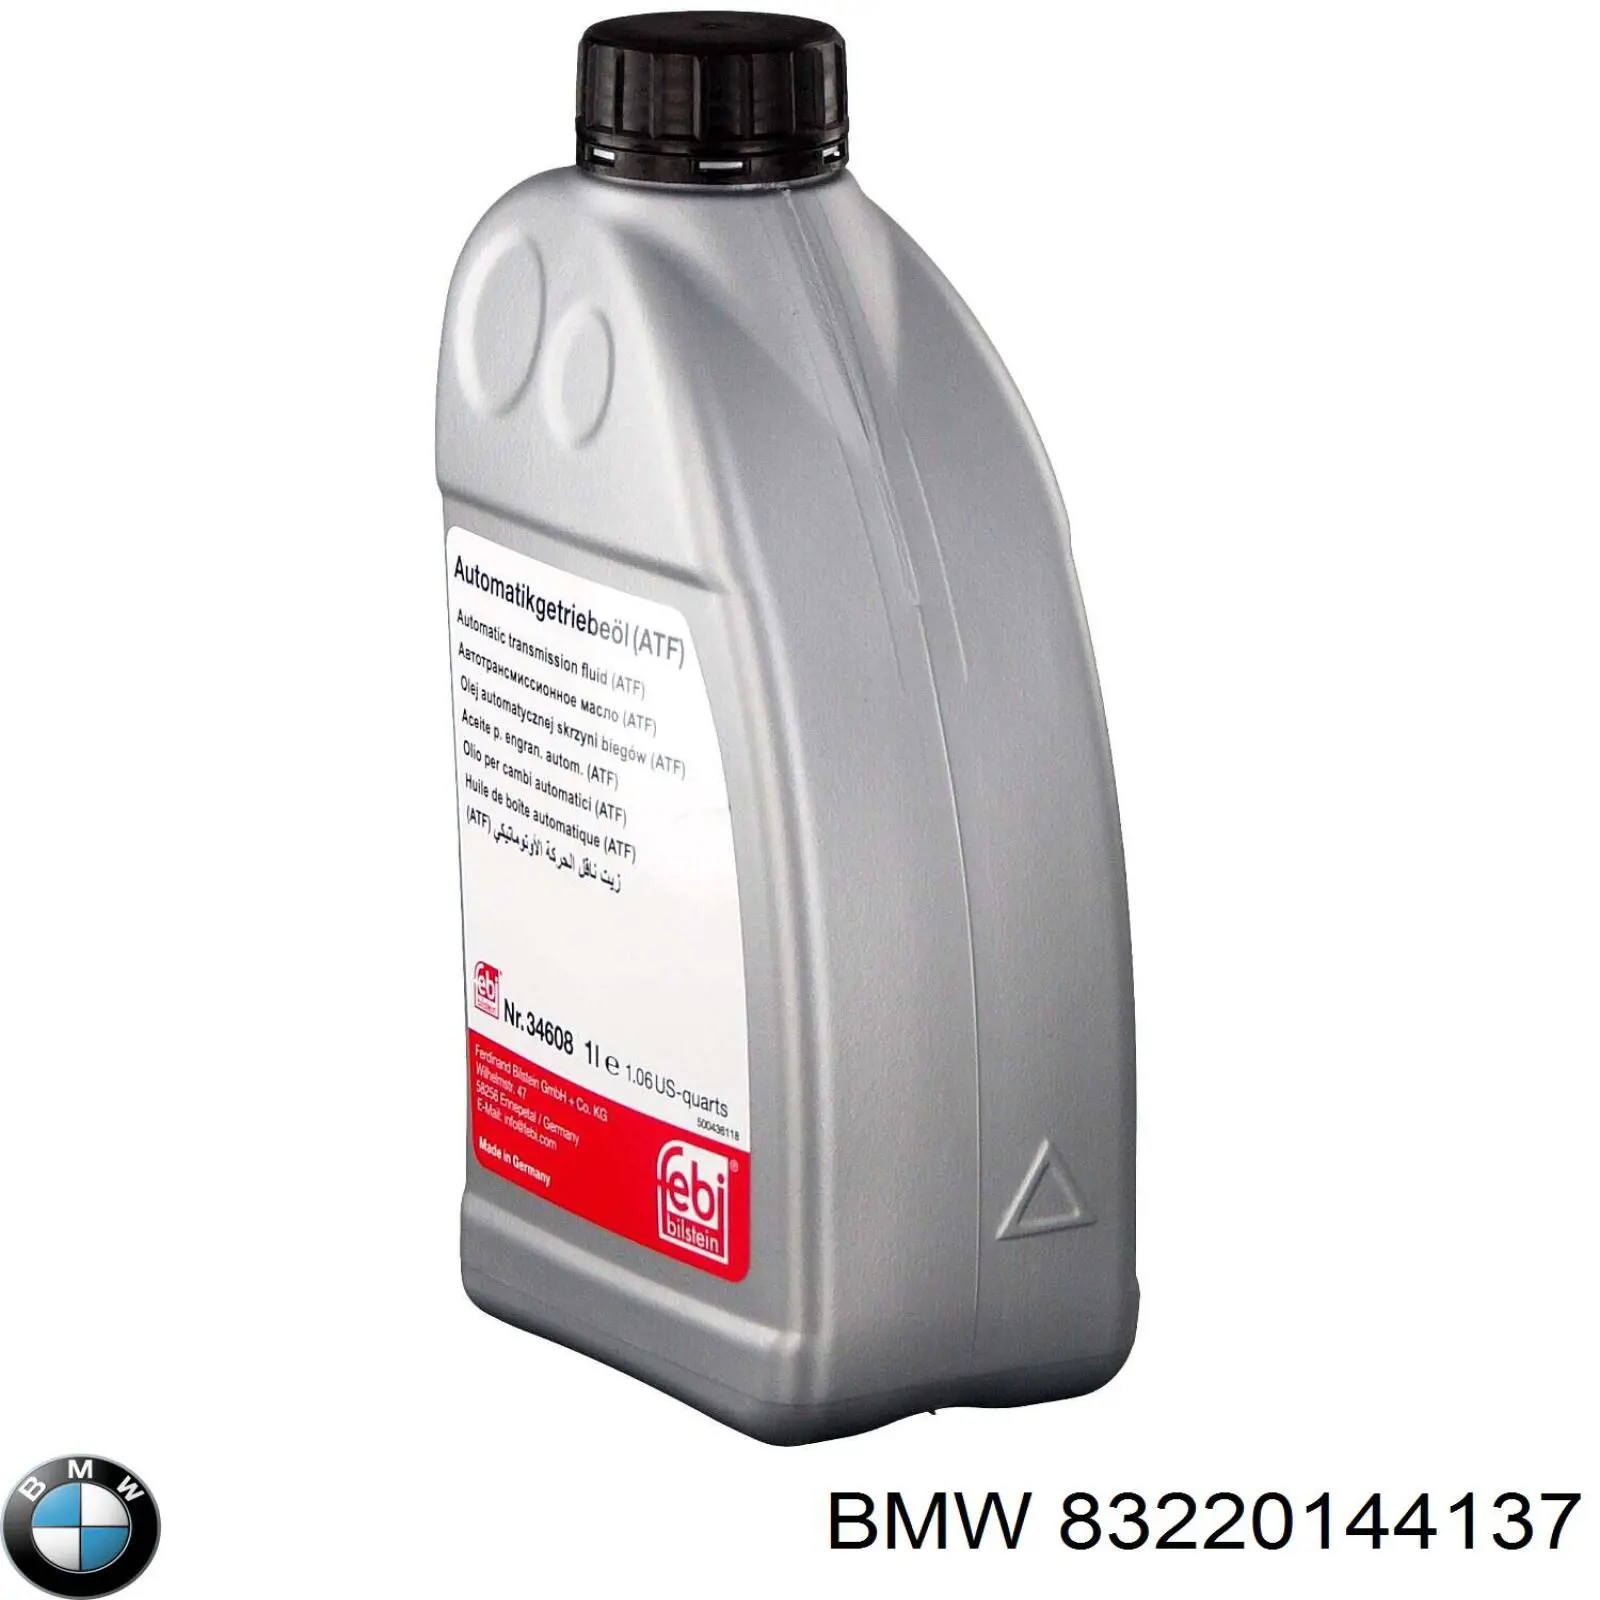  Масло трансмиссионное BMW M 1375.4 1 л (83220144137)